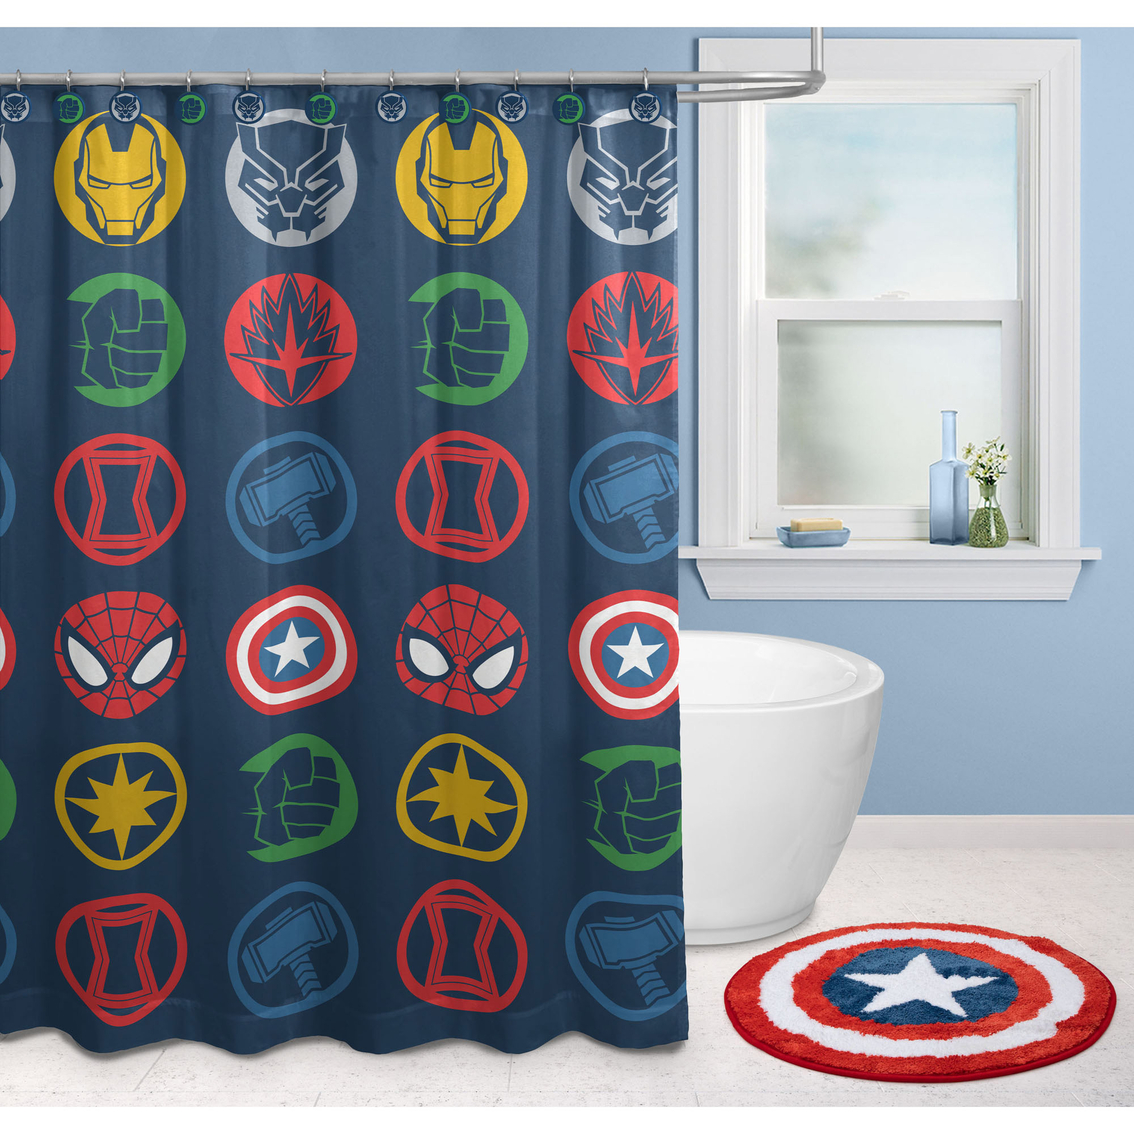 Marvel Avengers 14 pc. Bath Set - Image 4 of 6